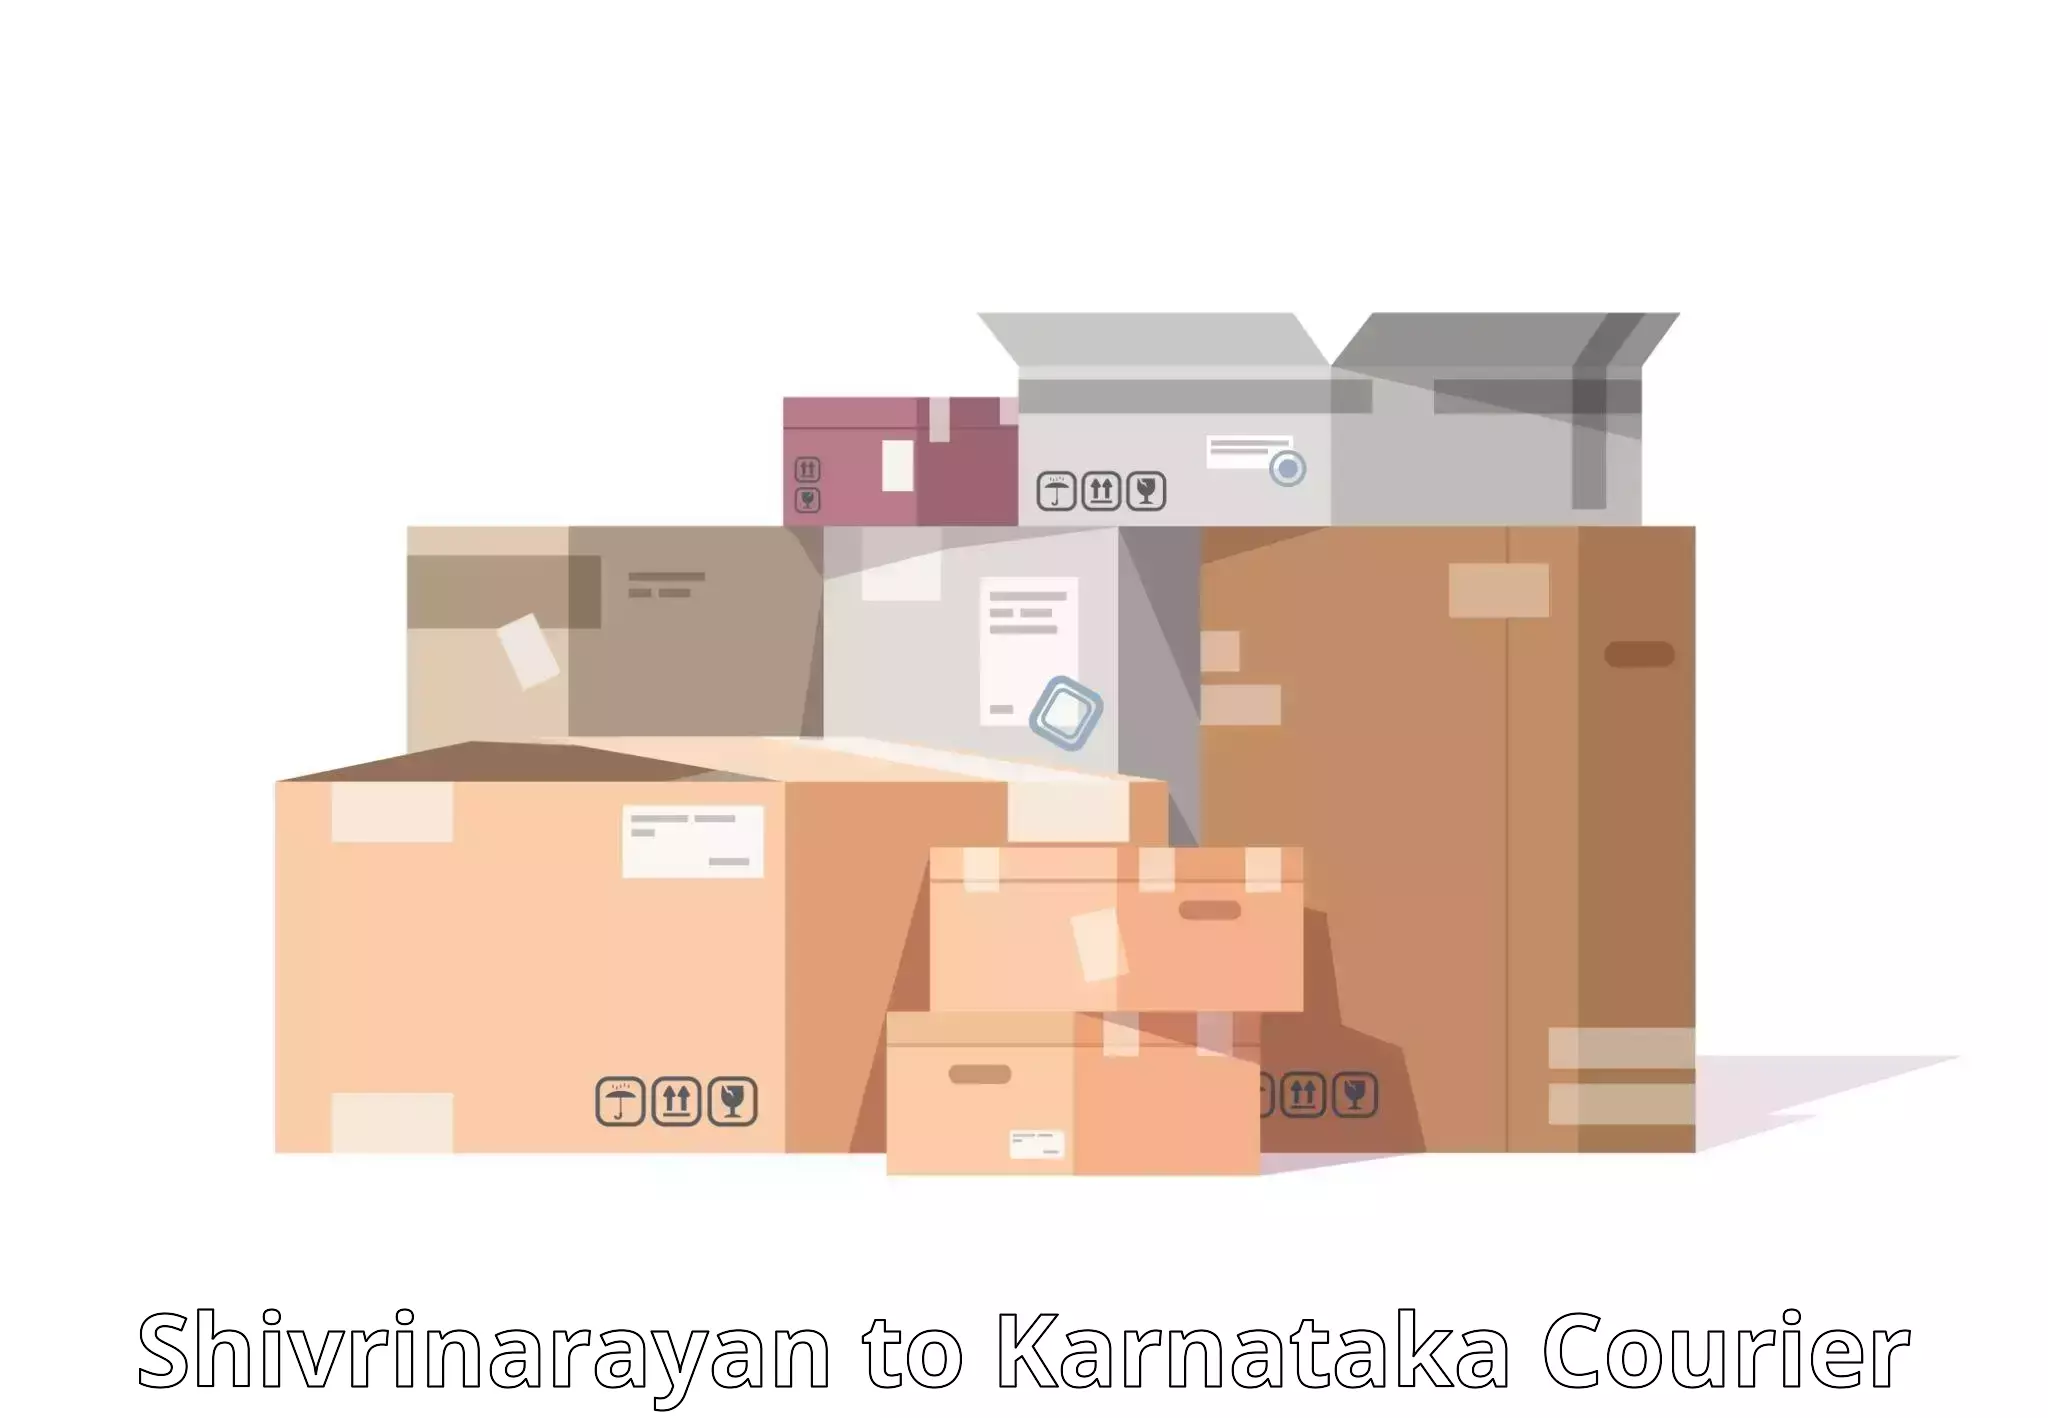 Parcel handling and care in Shivrinarayan to Ramanathapura